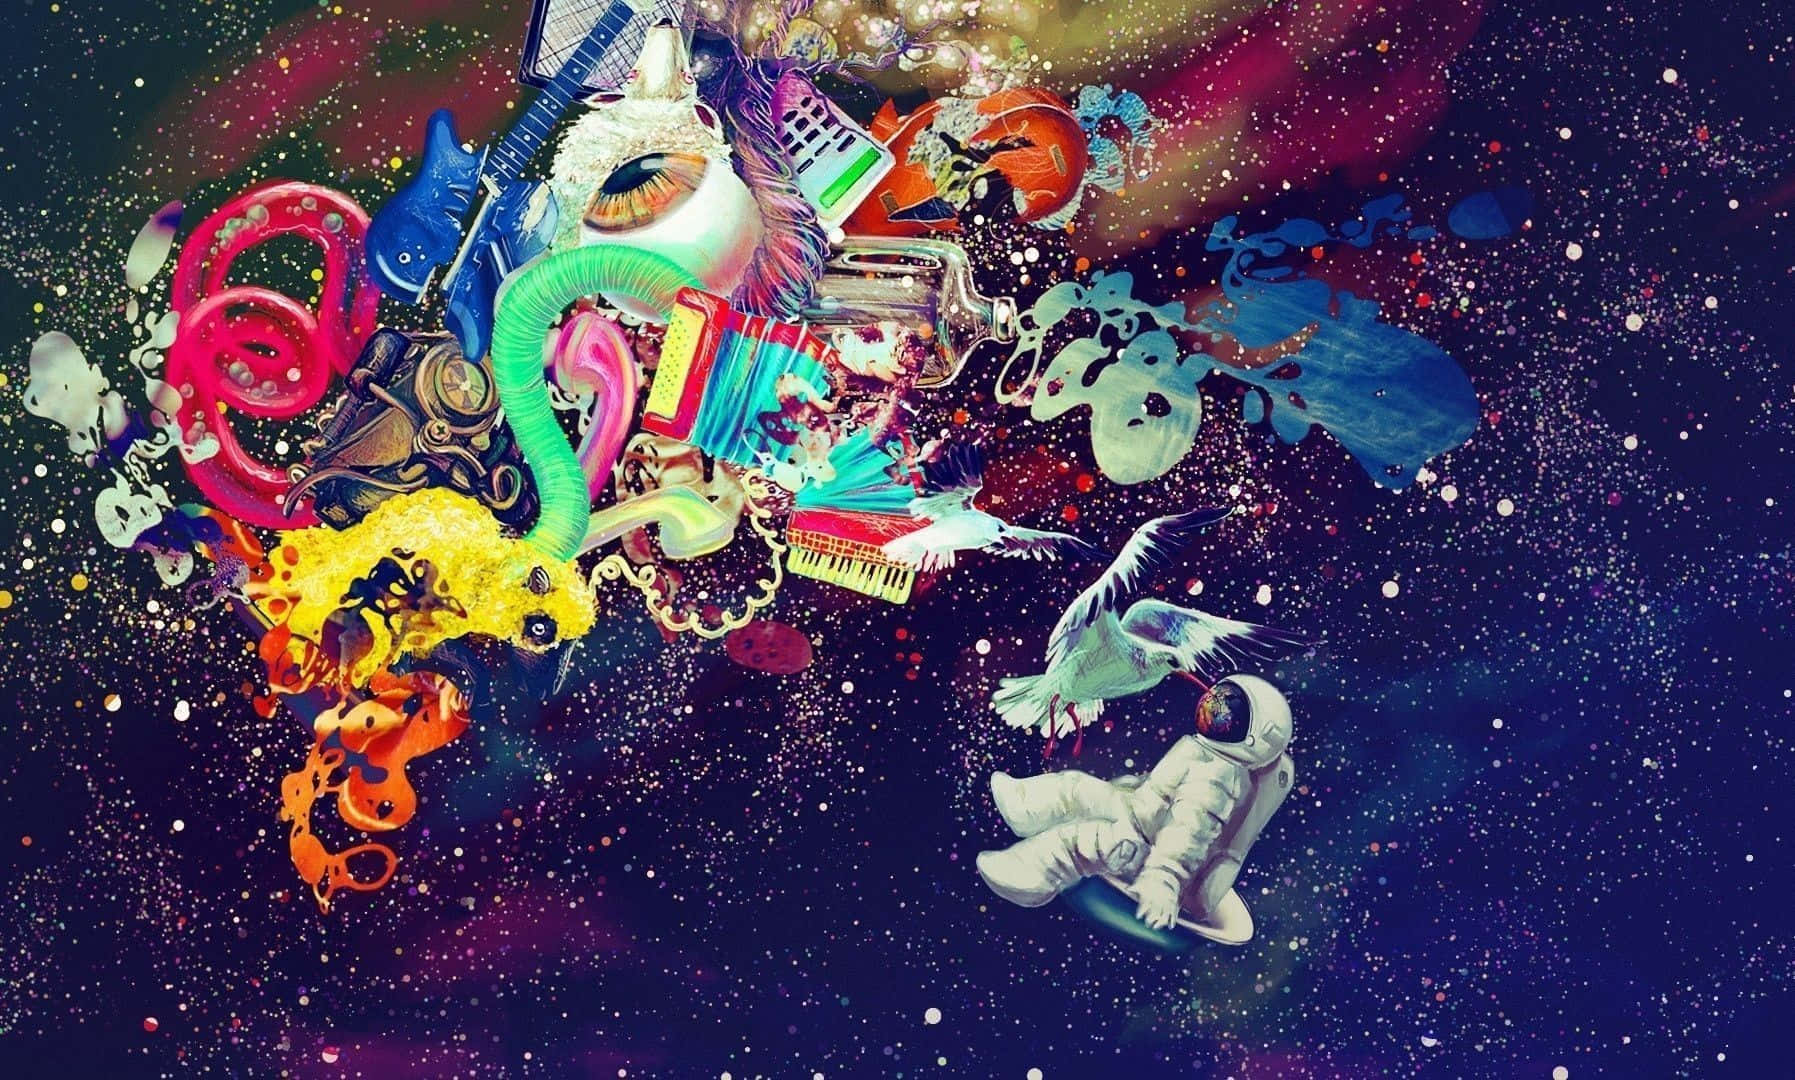 Interstellar Adventure in a Trippy Space Wallpaper